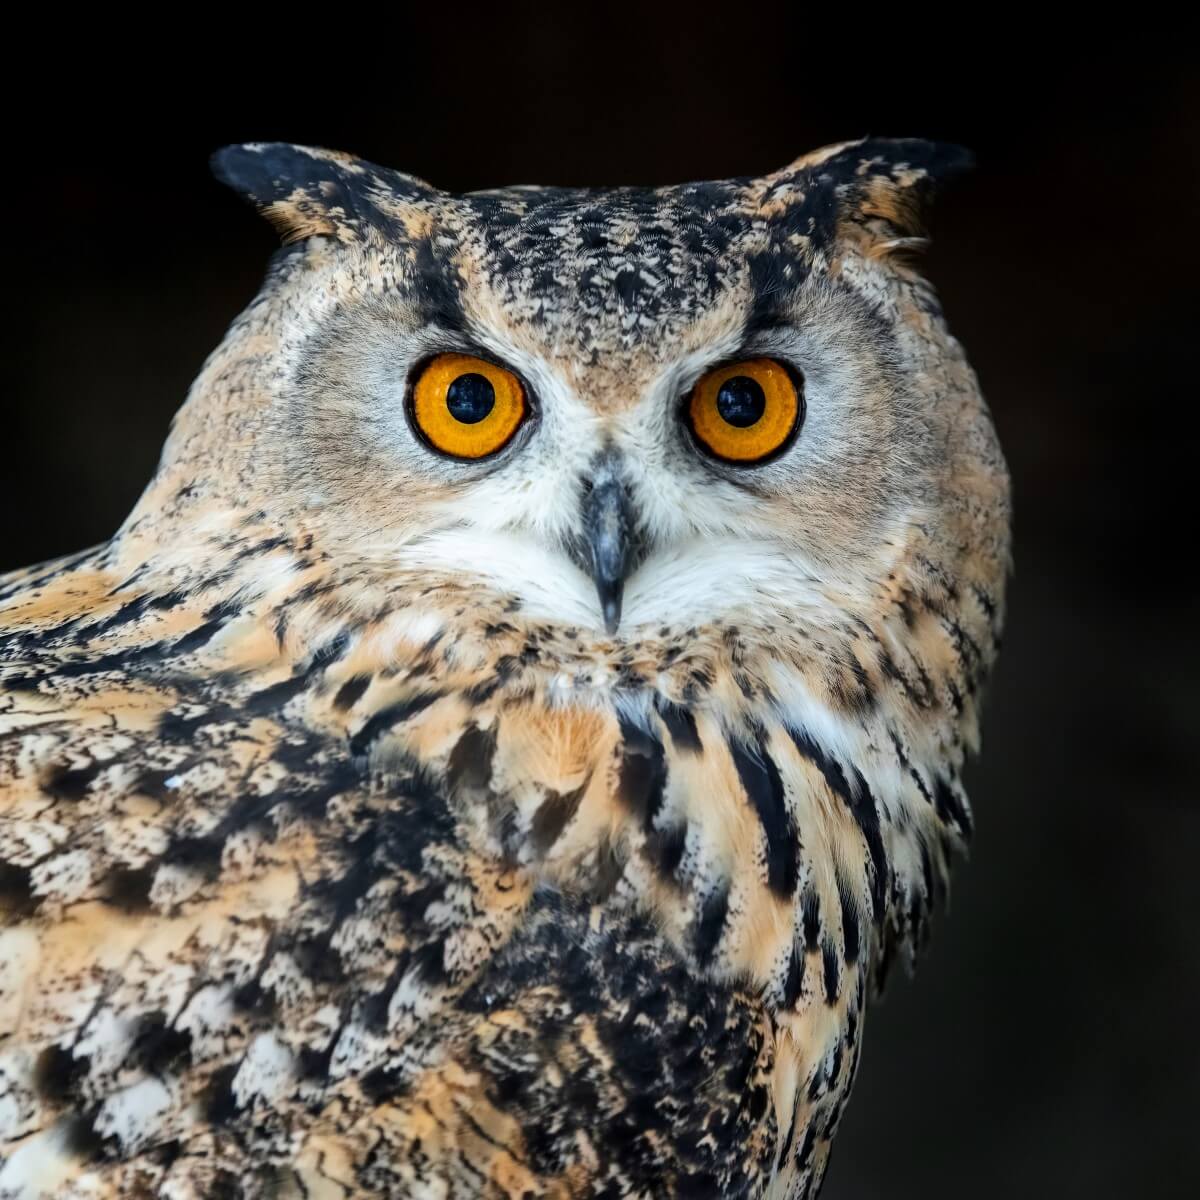 The amazing eyes of owls